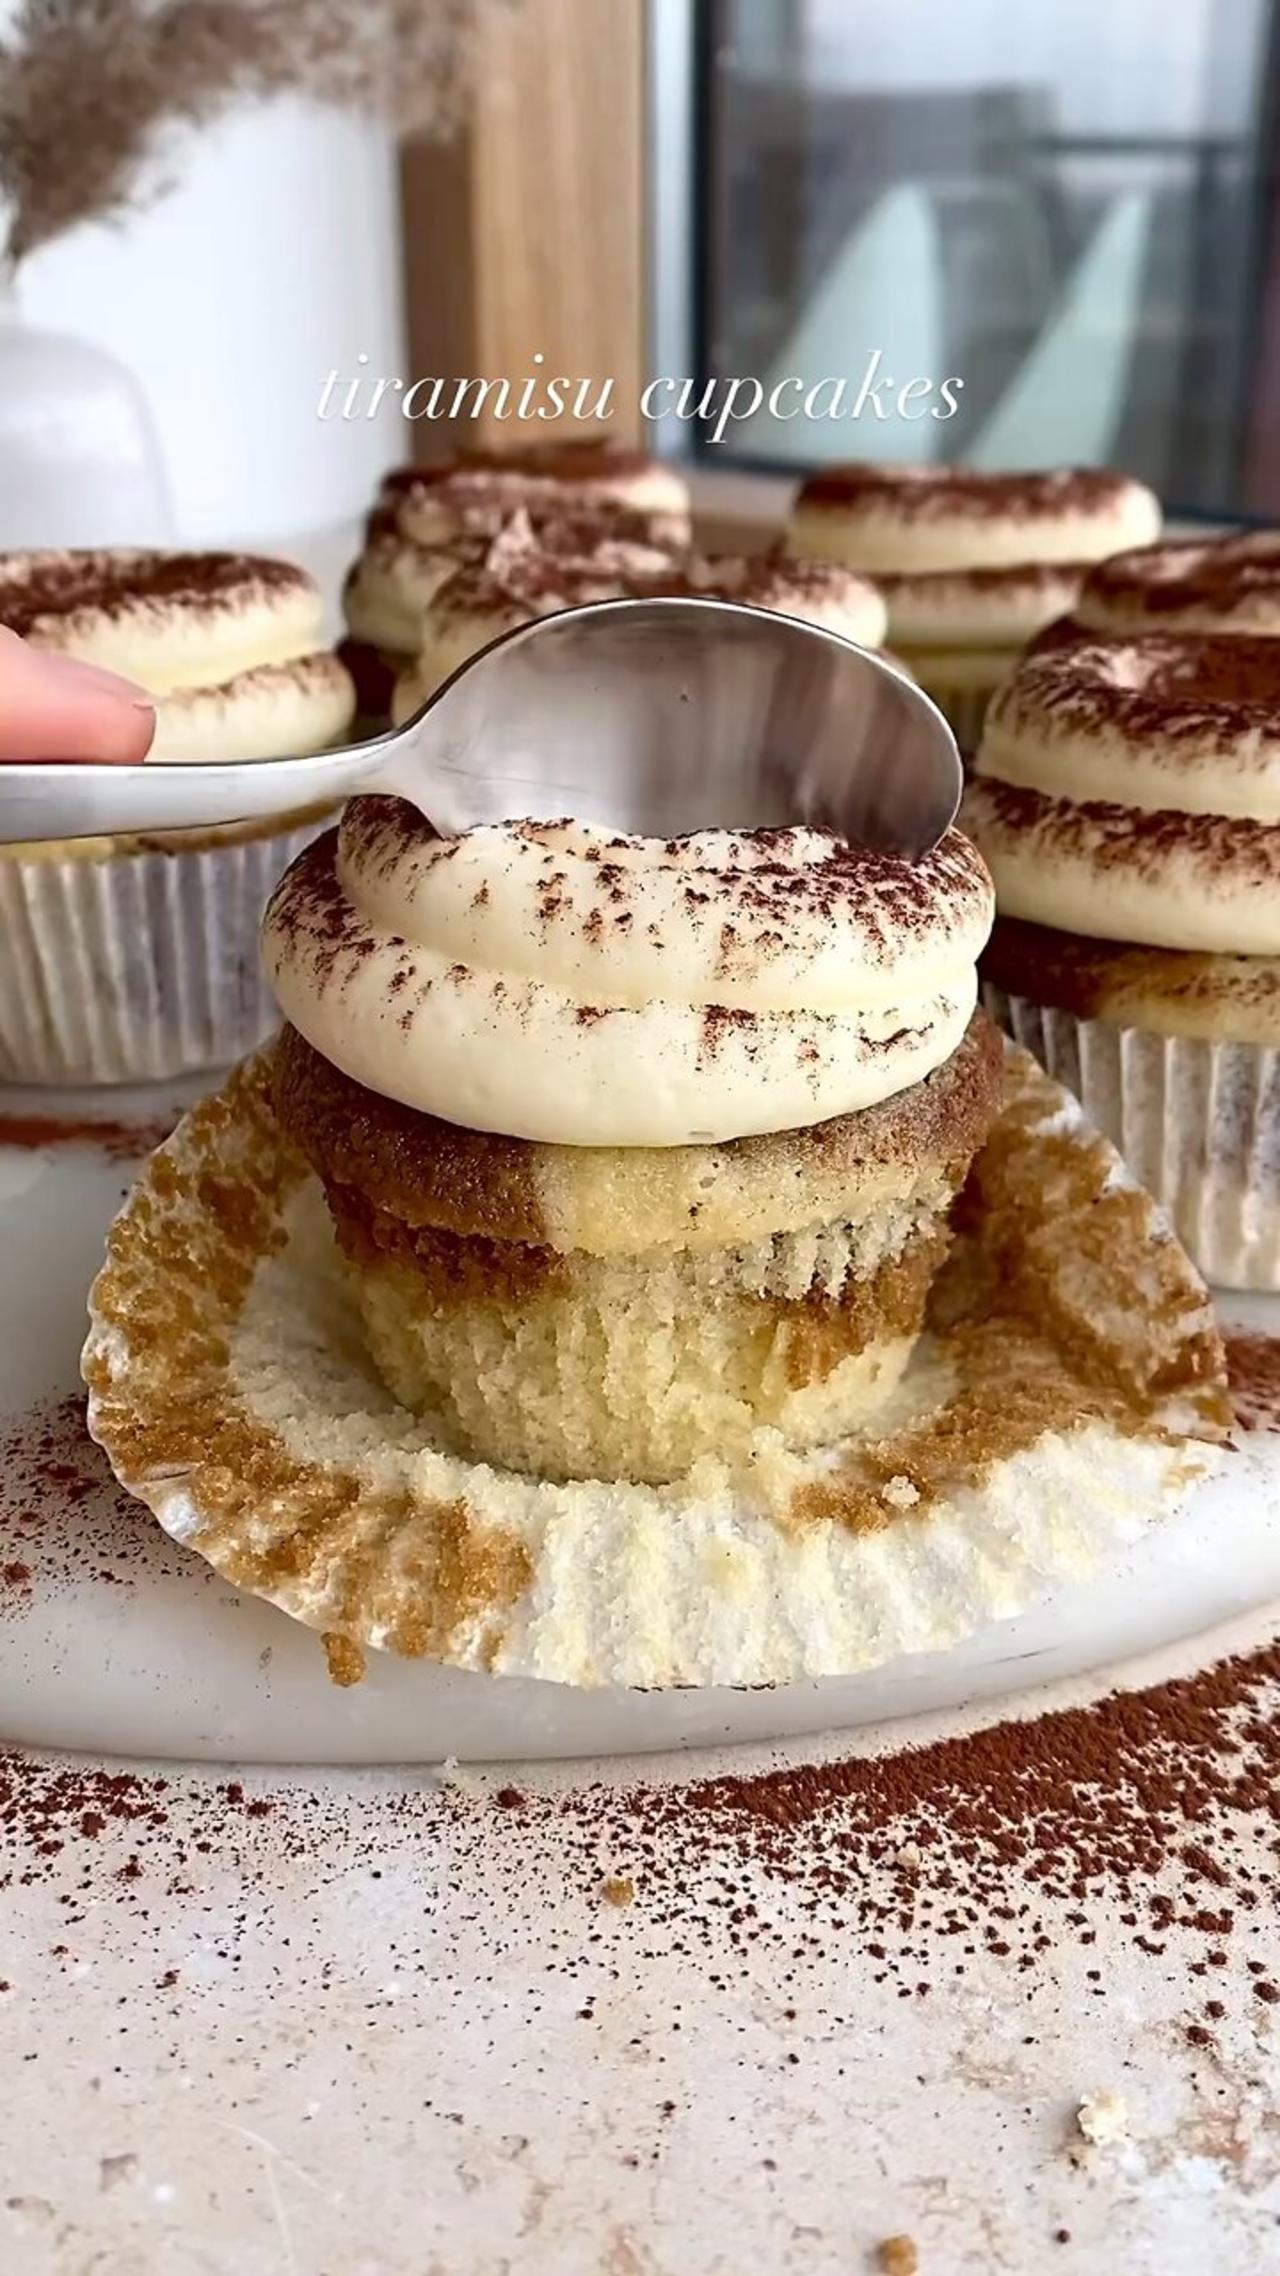 Julie Marie | easy recipes for home bakers | Tiramisu Cupcakes! Super soft